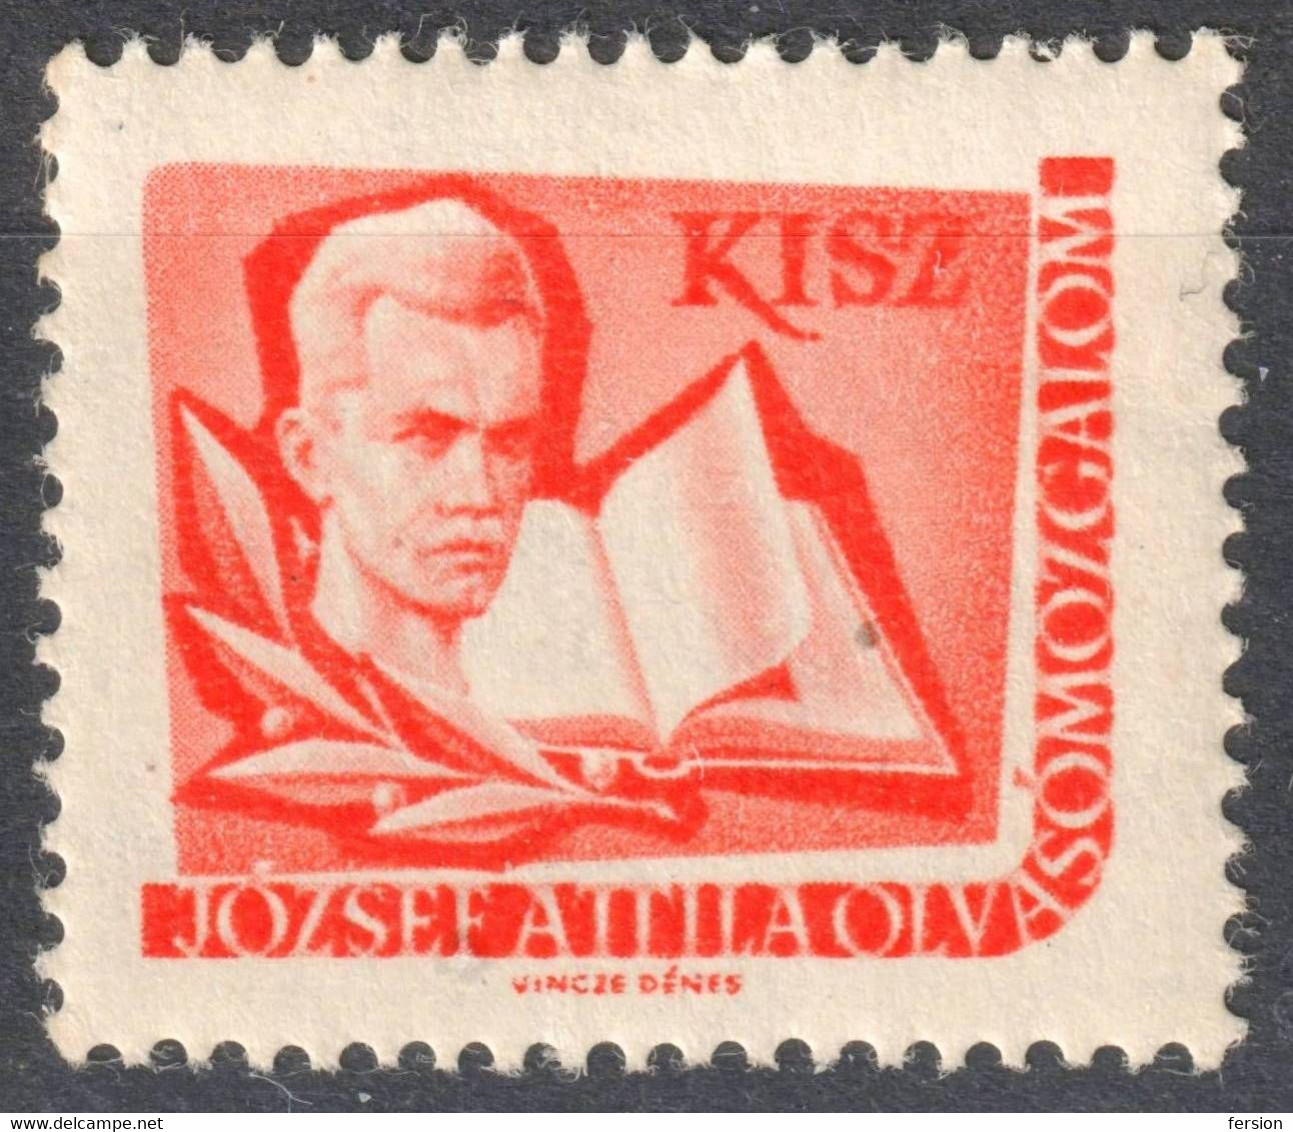 József Attila Poet Book KISZ Hungarian Young Communist League LIBRARY Member LABEL CINDERELLA VIGNETTE Hungary - Dienstzegels